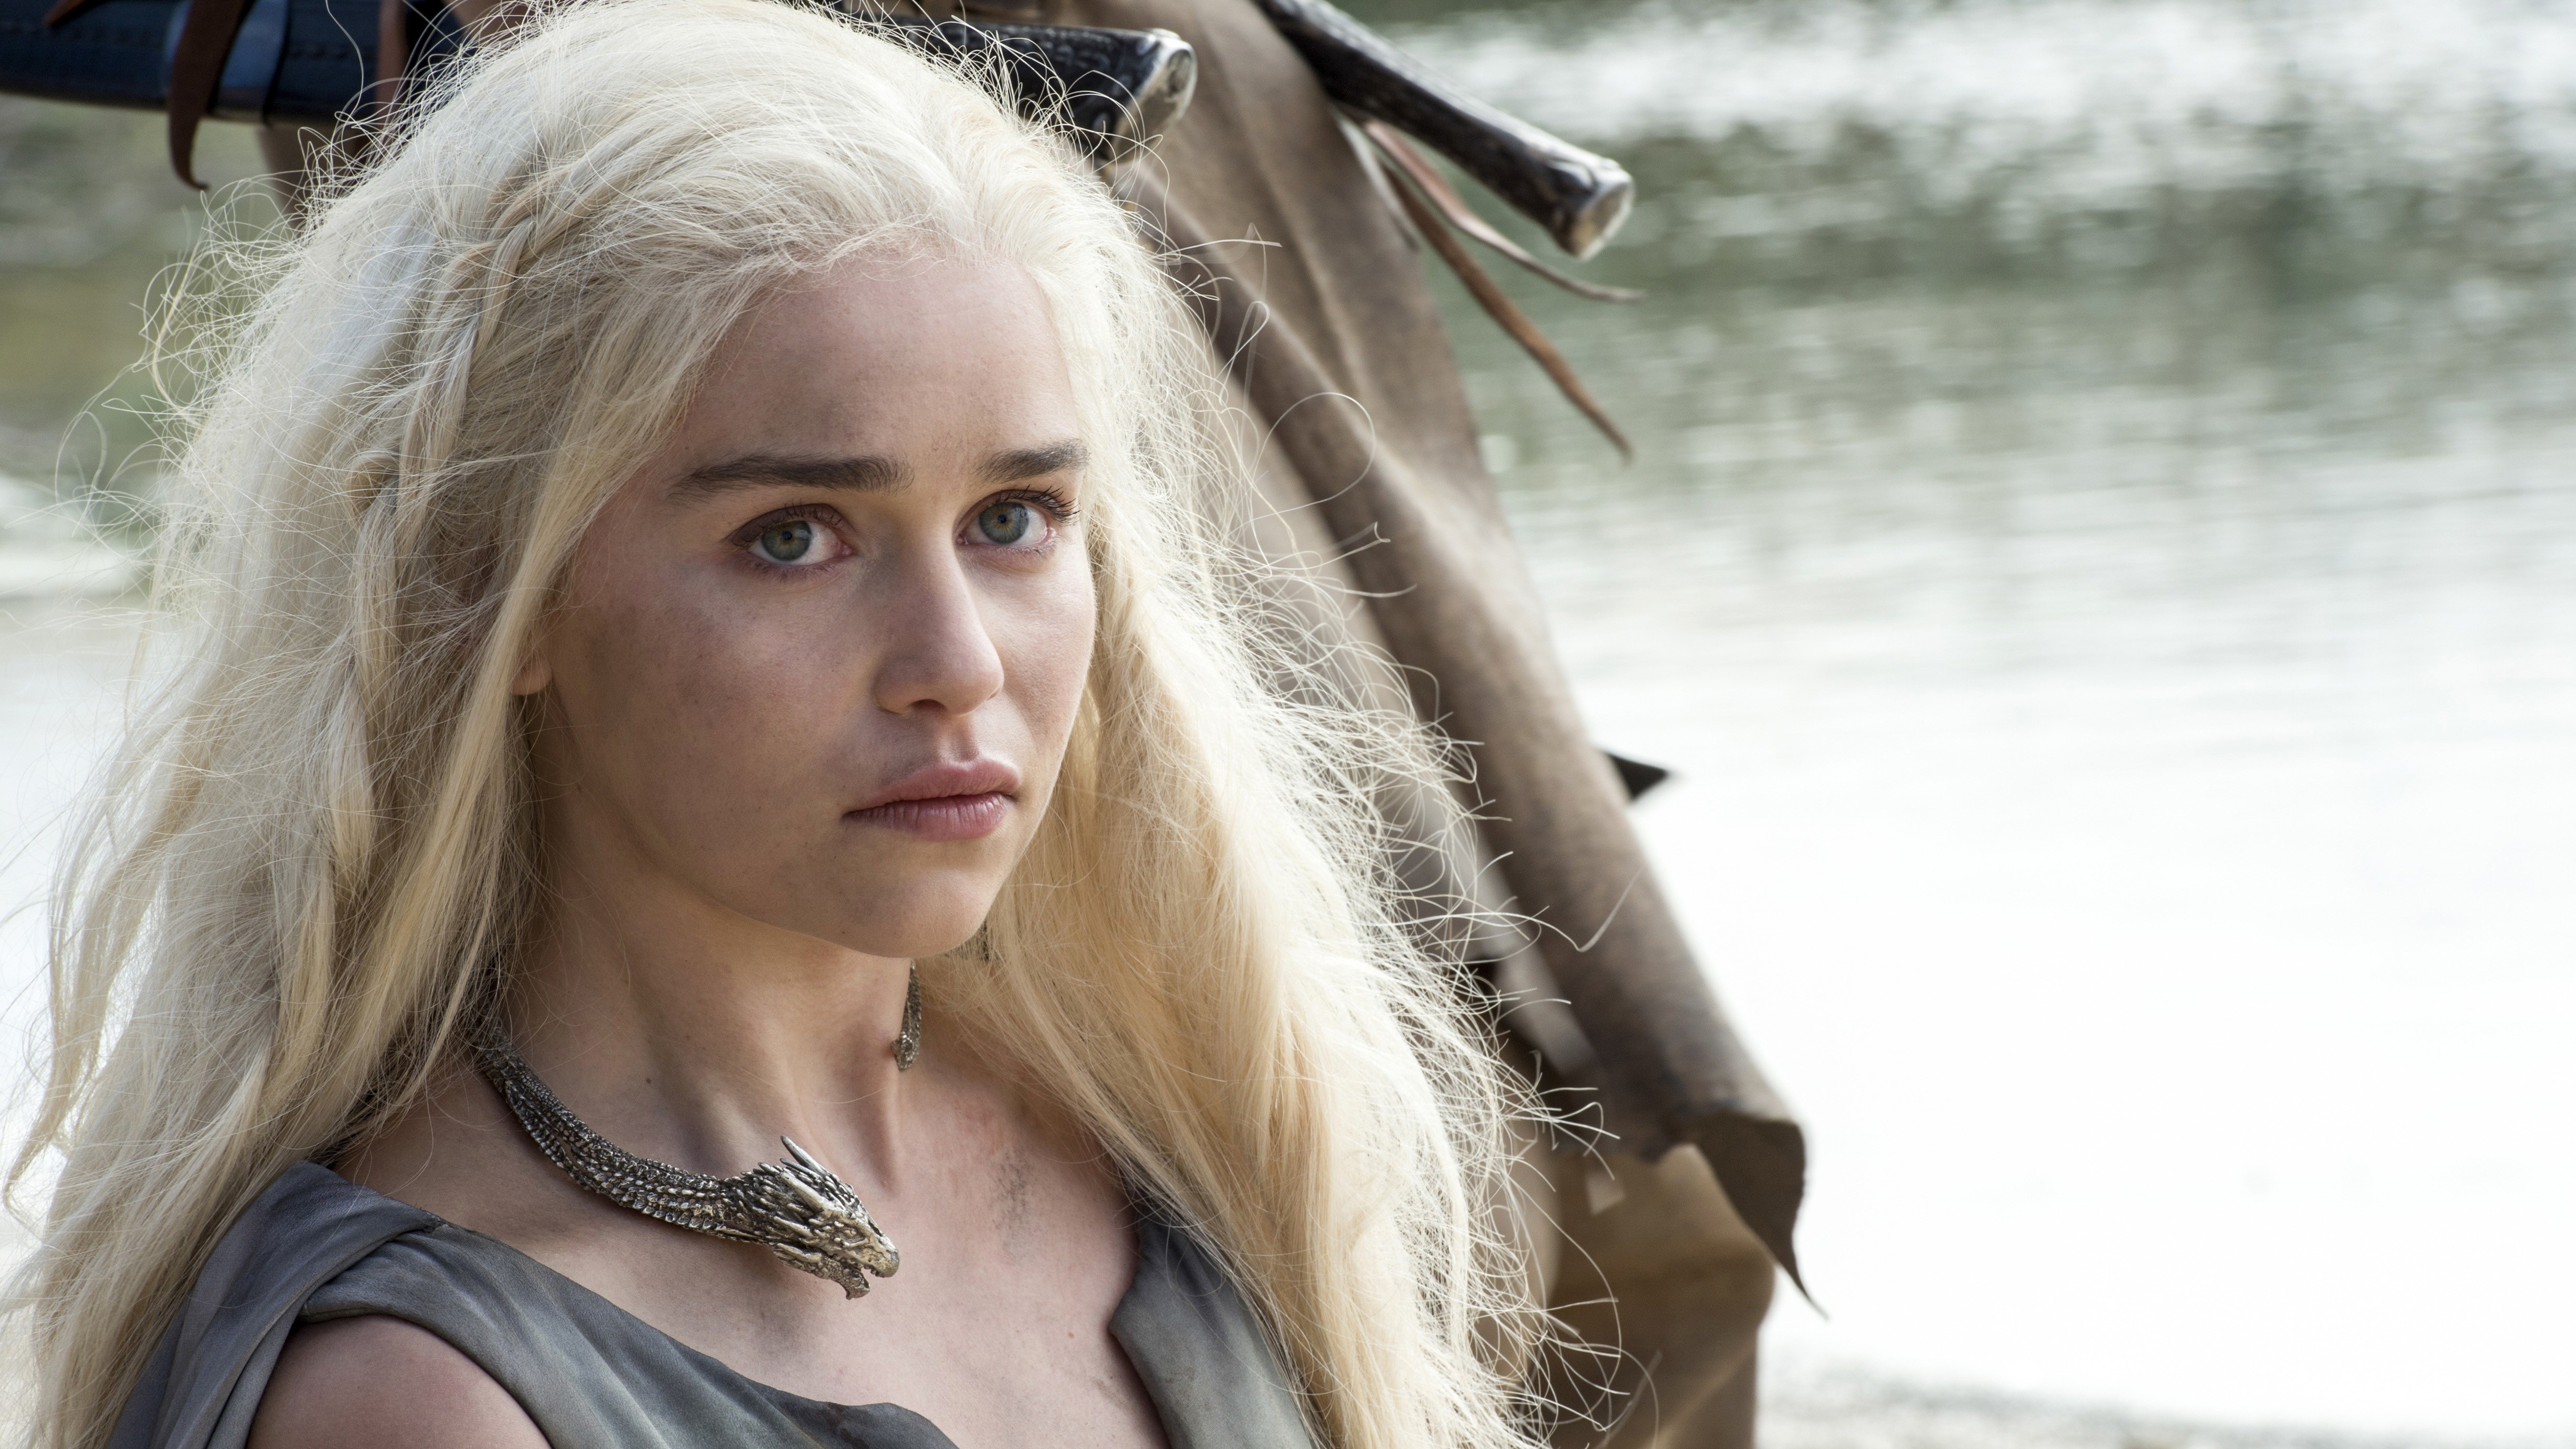 People 5120x2880 Emilia Clarke Game of Thrones celebrity women actress Daenerys Targaryen TV series fantasy girl long hair blonde necklace British women